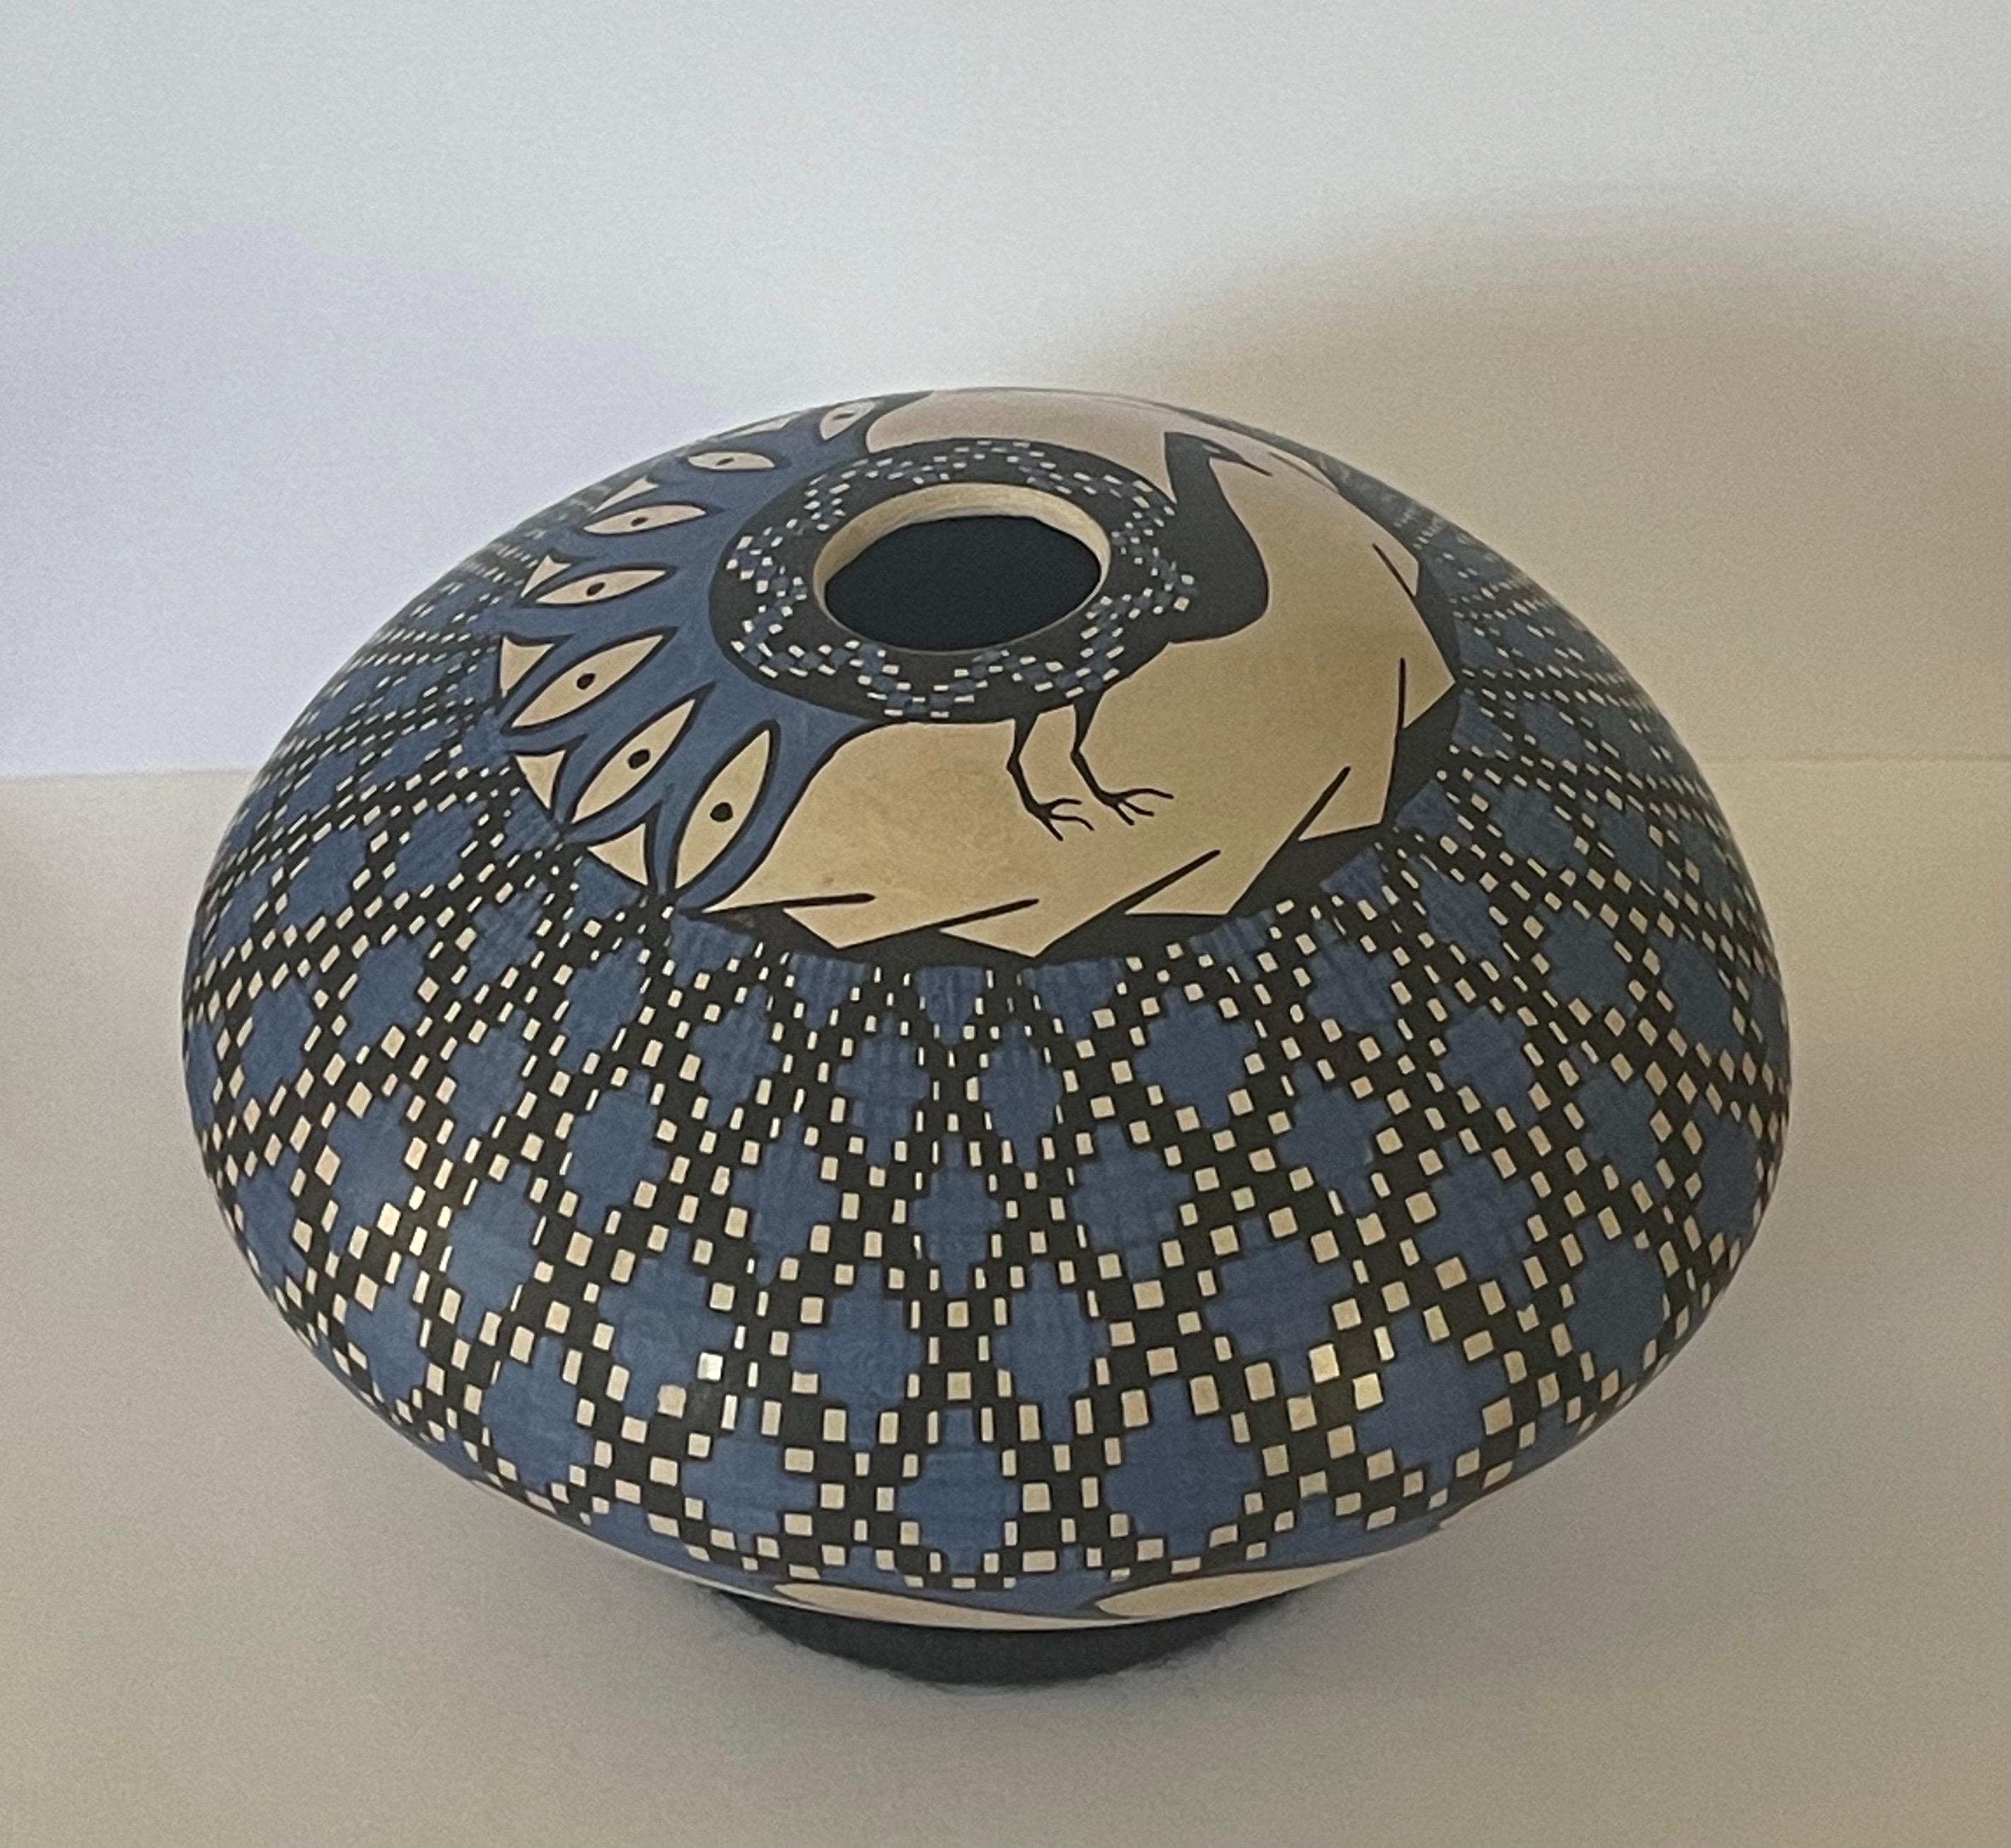 Magnifique vase géométrique Mata Ortiz polychrome tourné à la main par Emila Villa, vers les années 1990. Le vase a une belle finition bleue avec un paon comme pièce centrale et mesure 5 